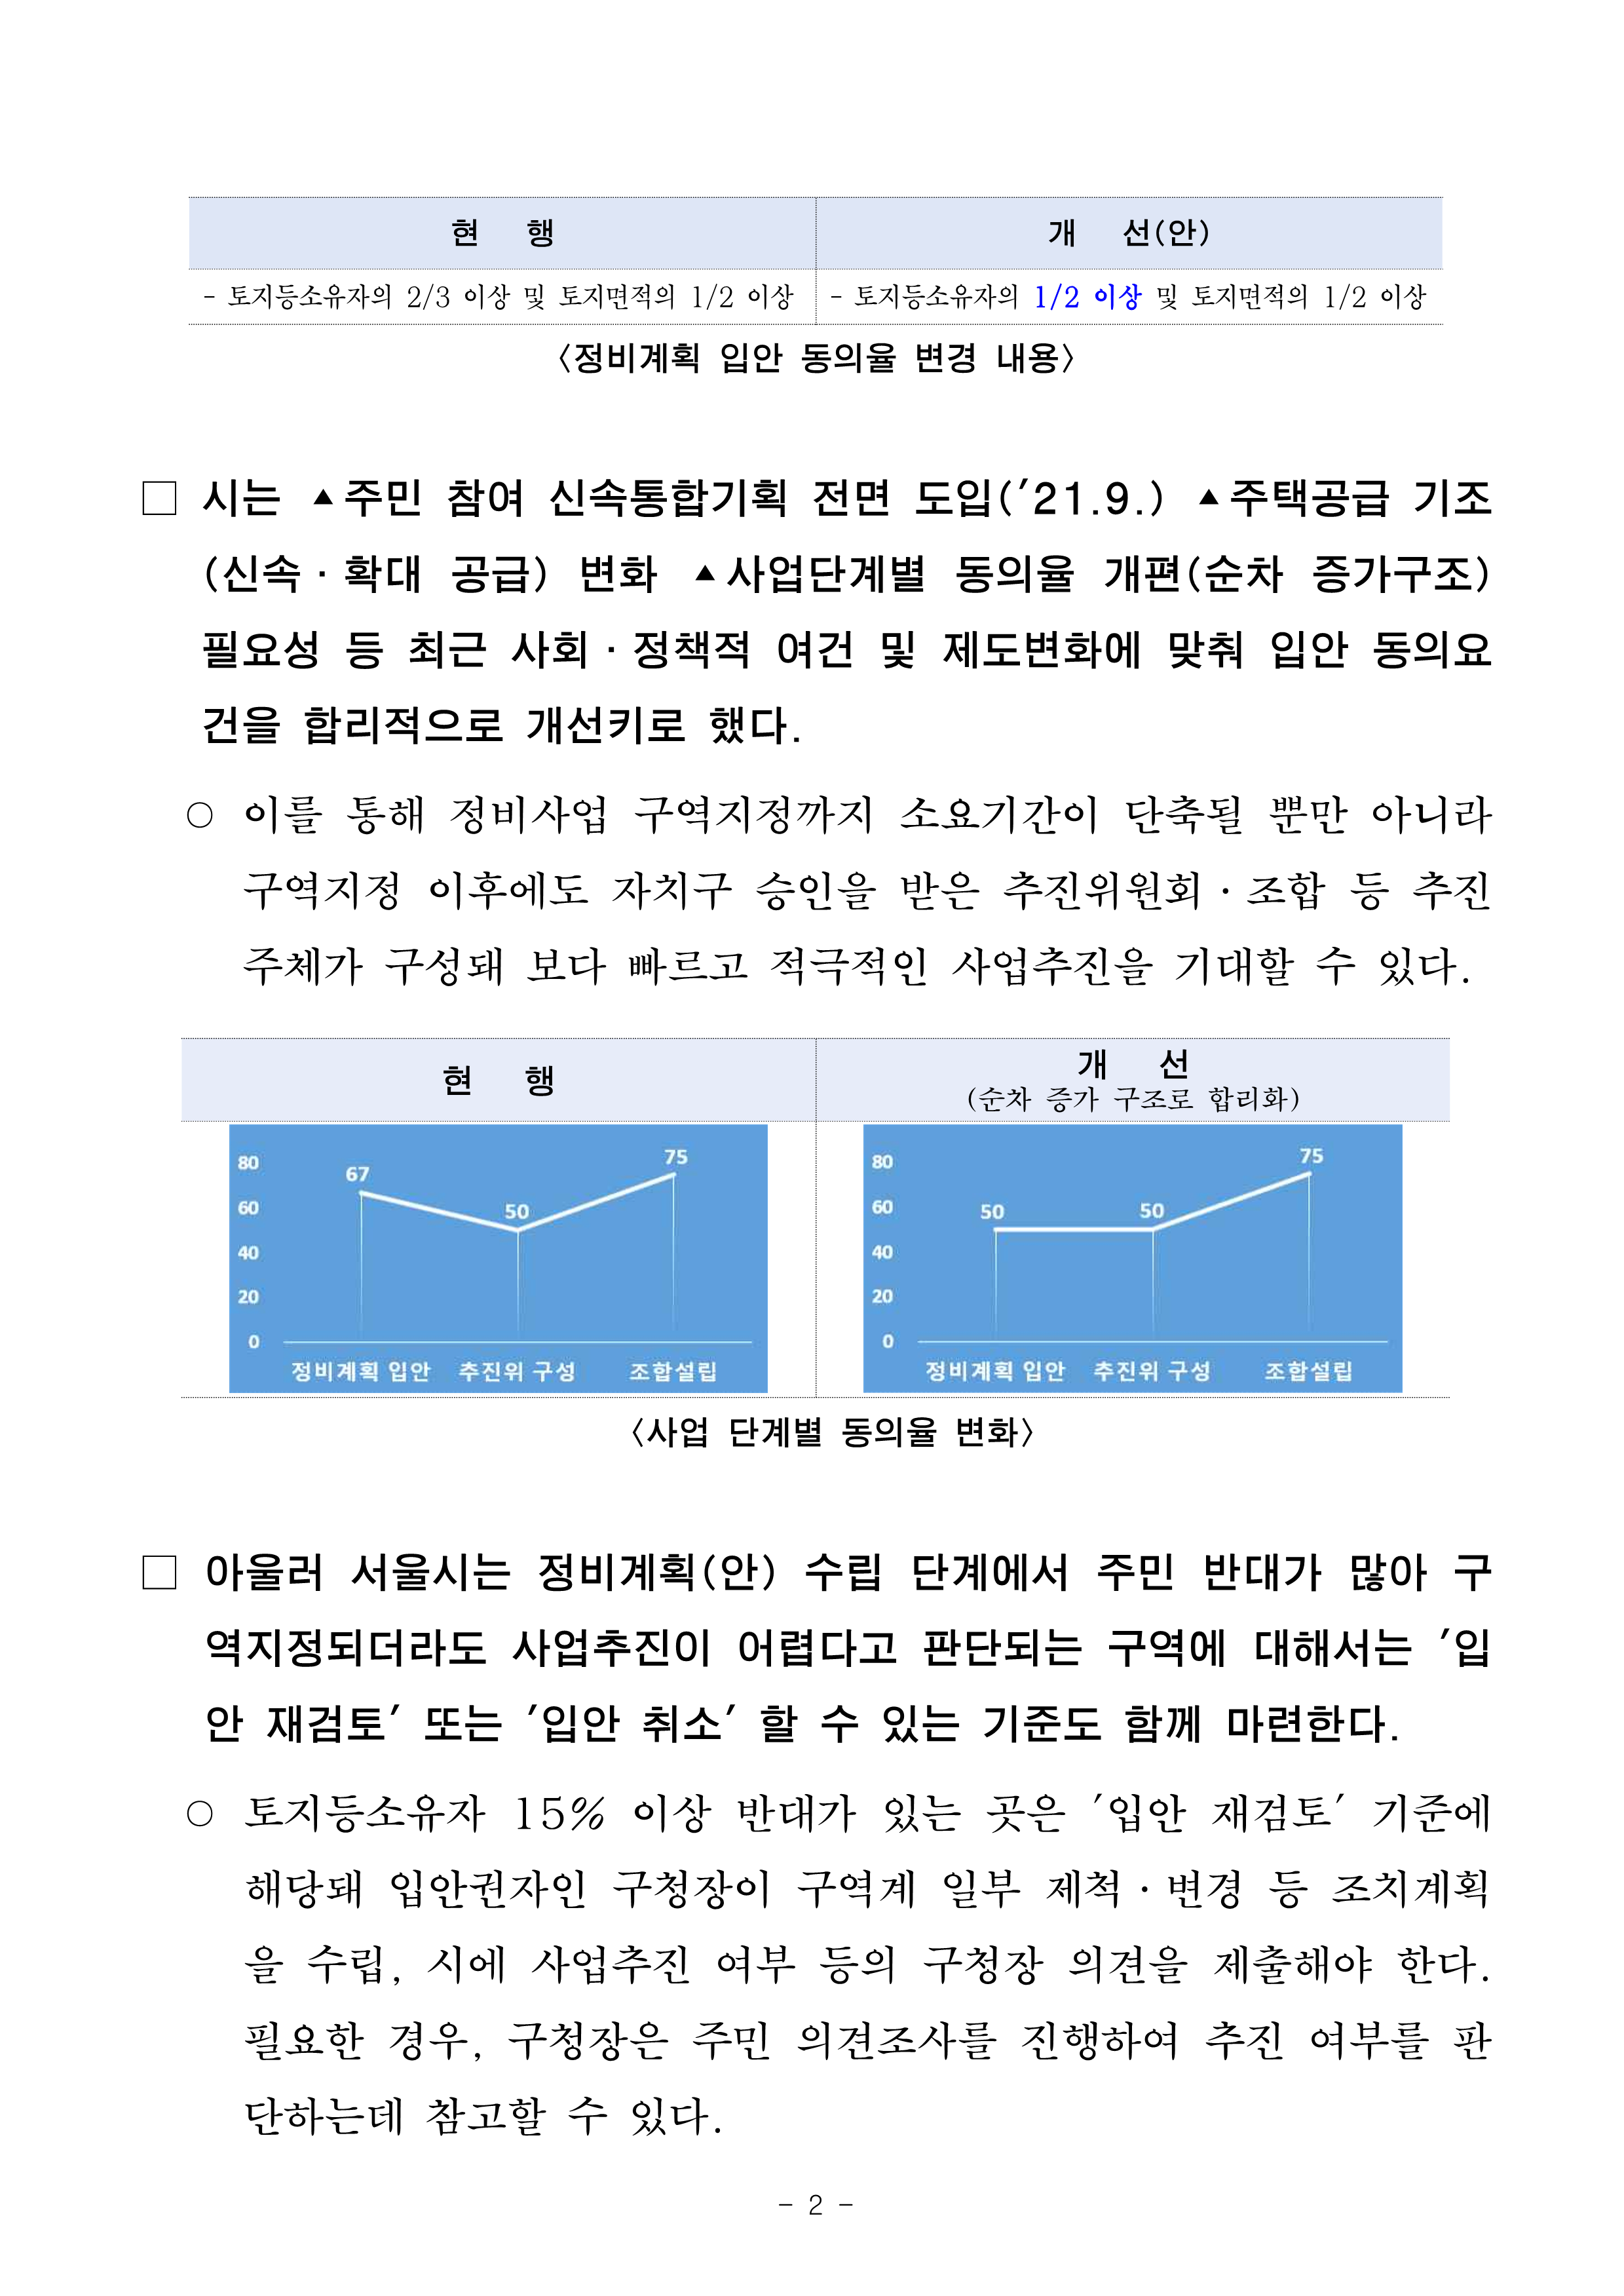 (석간)서울시, 신속통합기획 재개발 정비계획 _입안 동의율 50퍼센트_로 완화_2.png